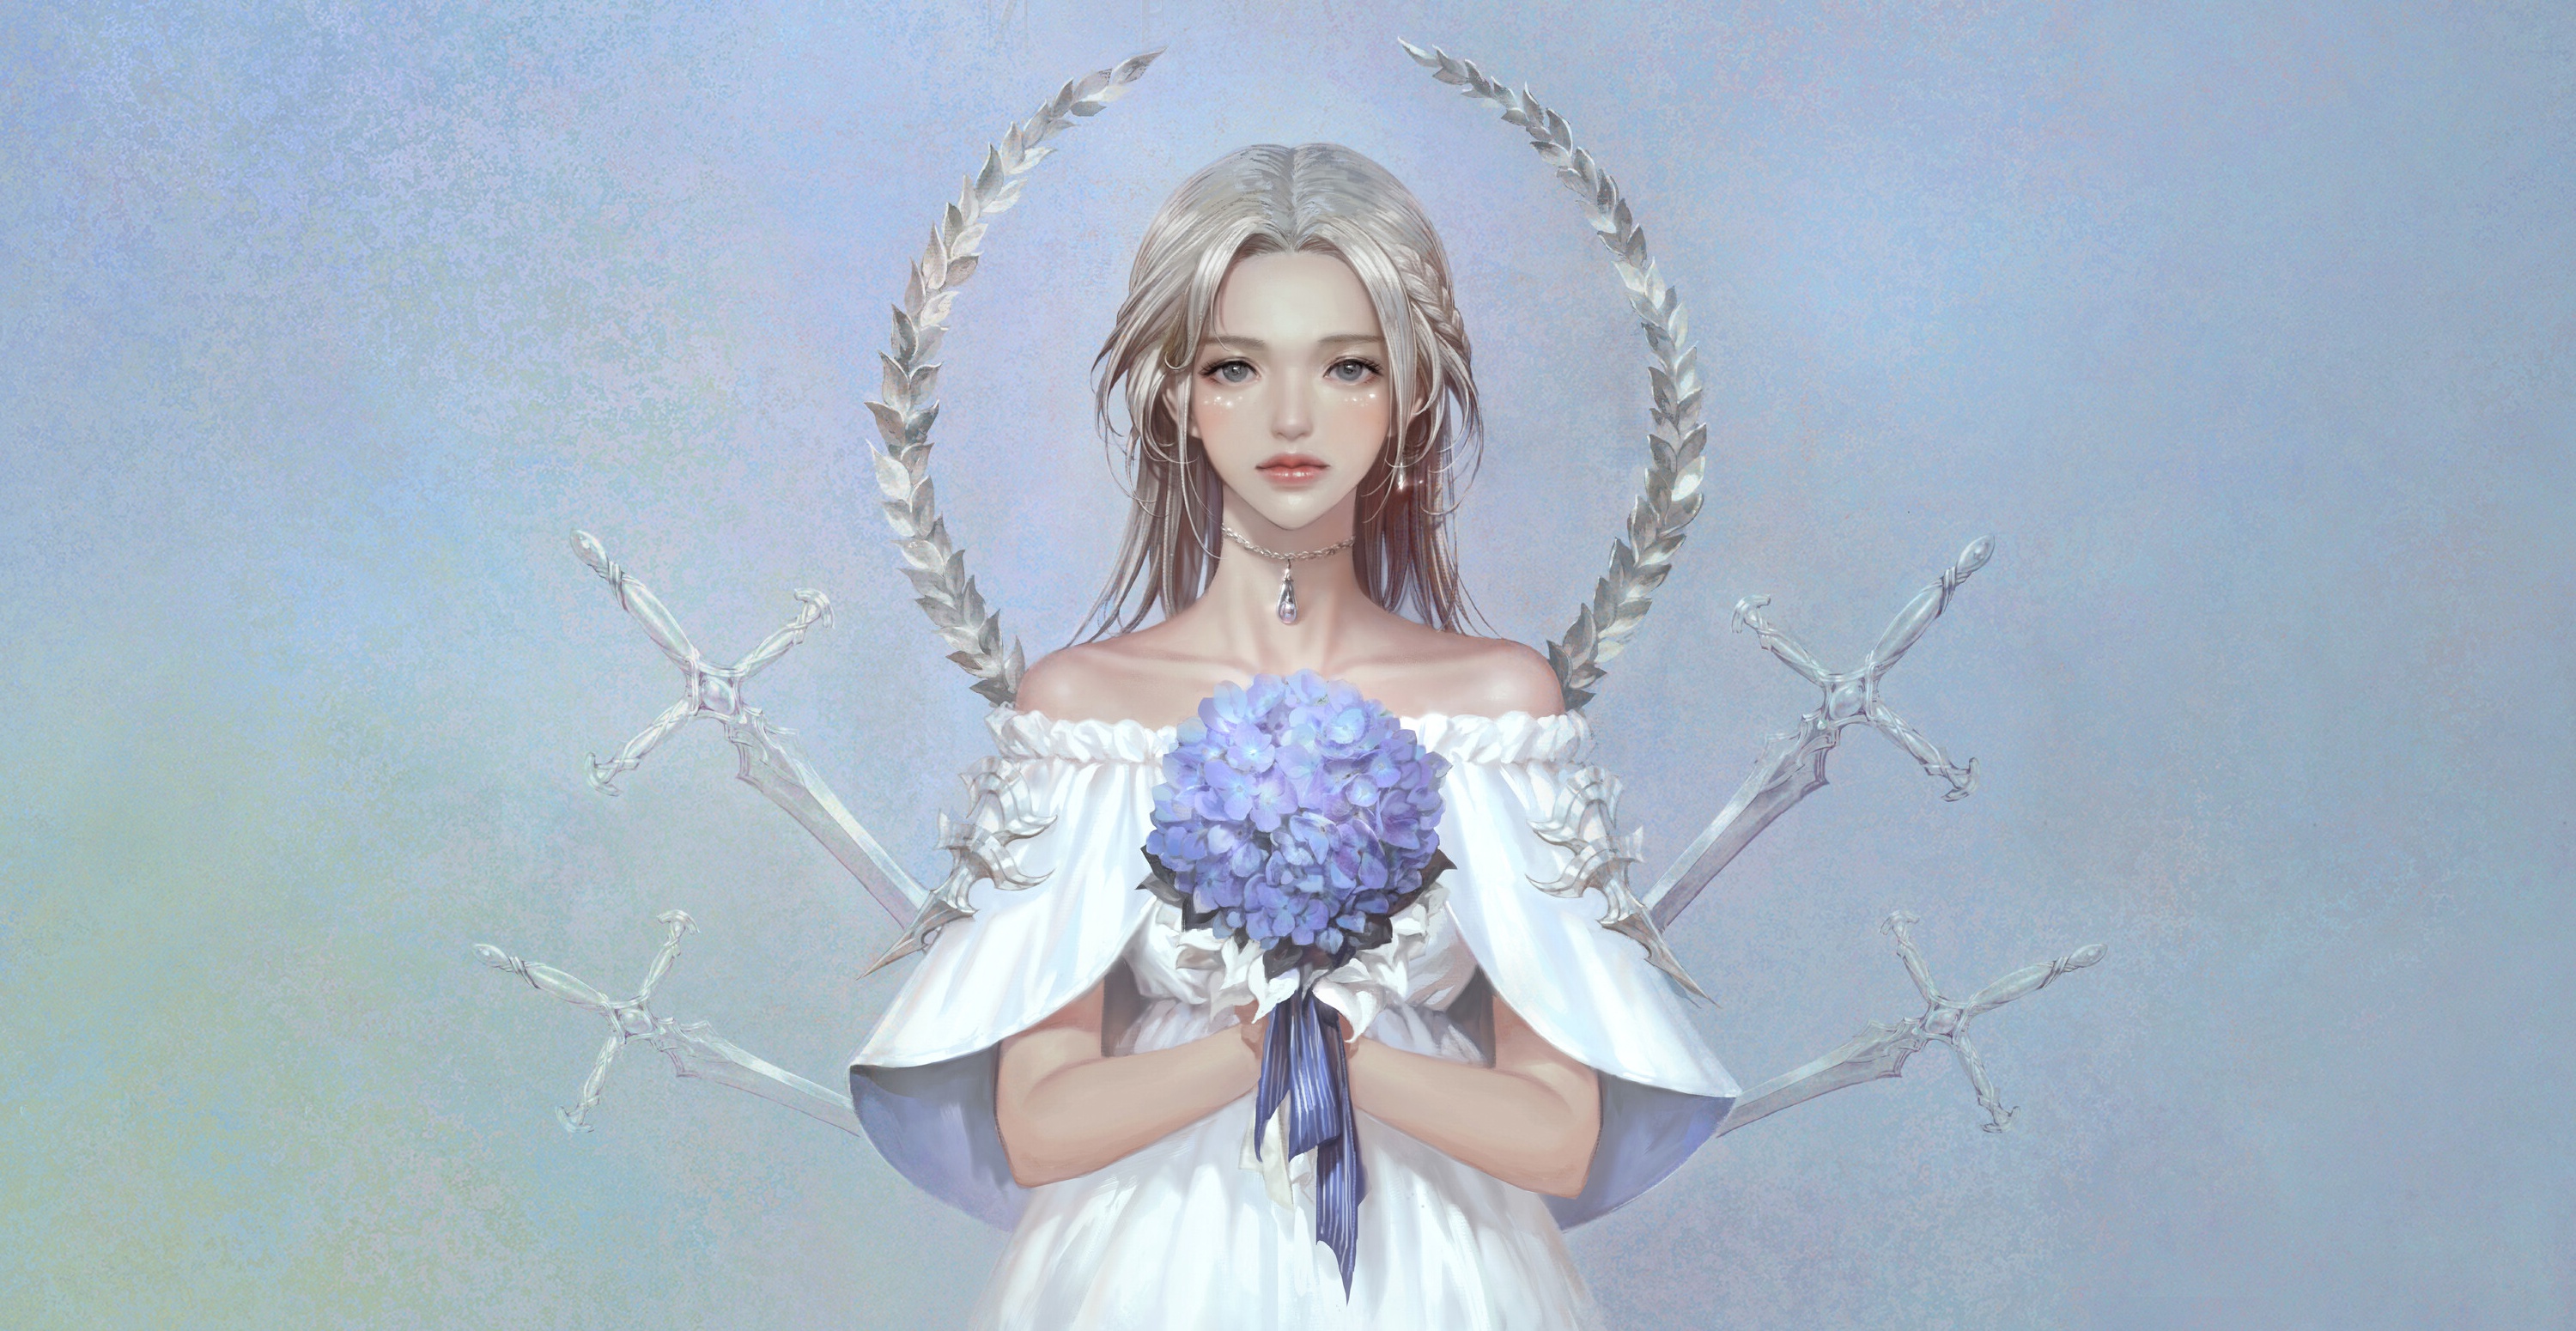 General 3000x1550 fantasy art fantasy girl flowers white dress simple background artwork